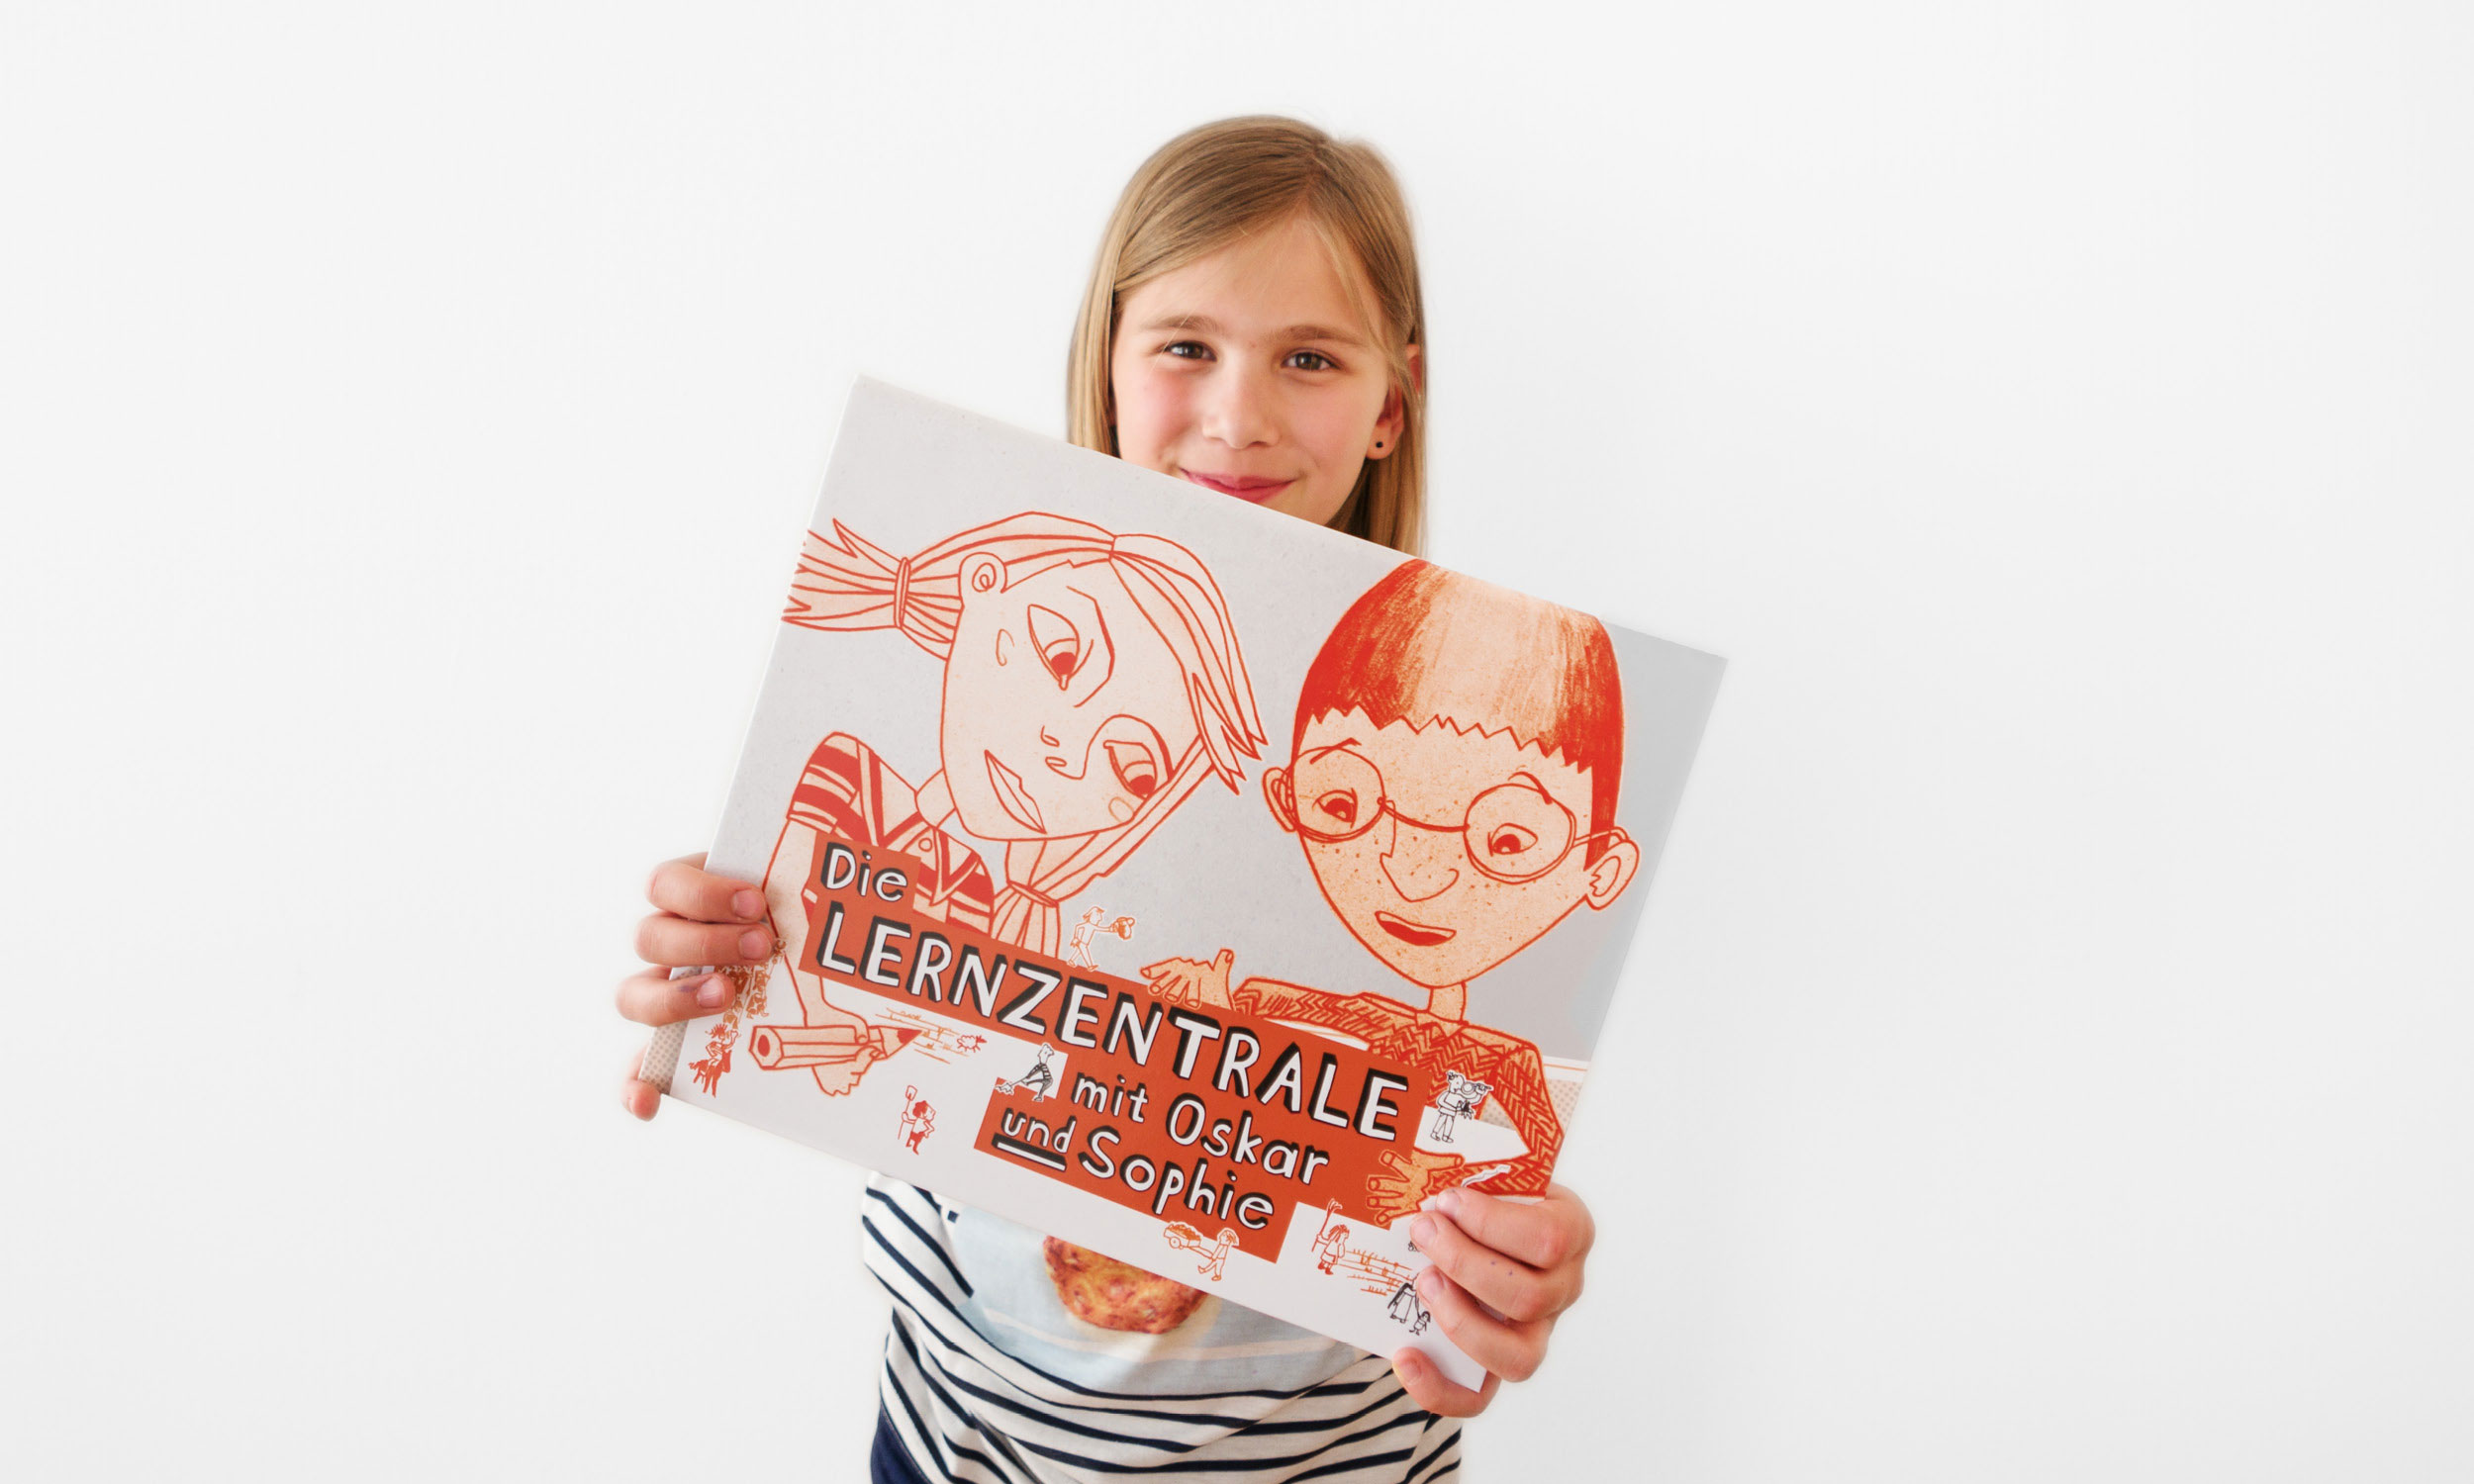 Foto eines lächelnden Mädchens, das stolz den Ordner ”Die Lernzentrale mit Oskar und Sophie” zeigt